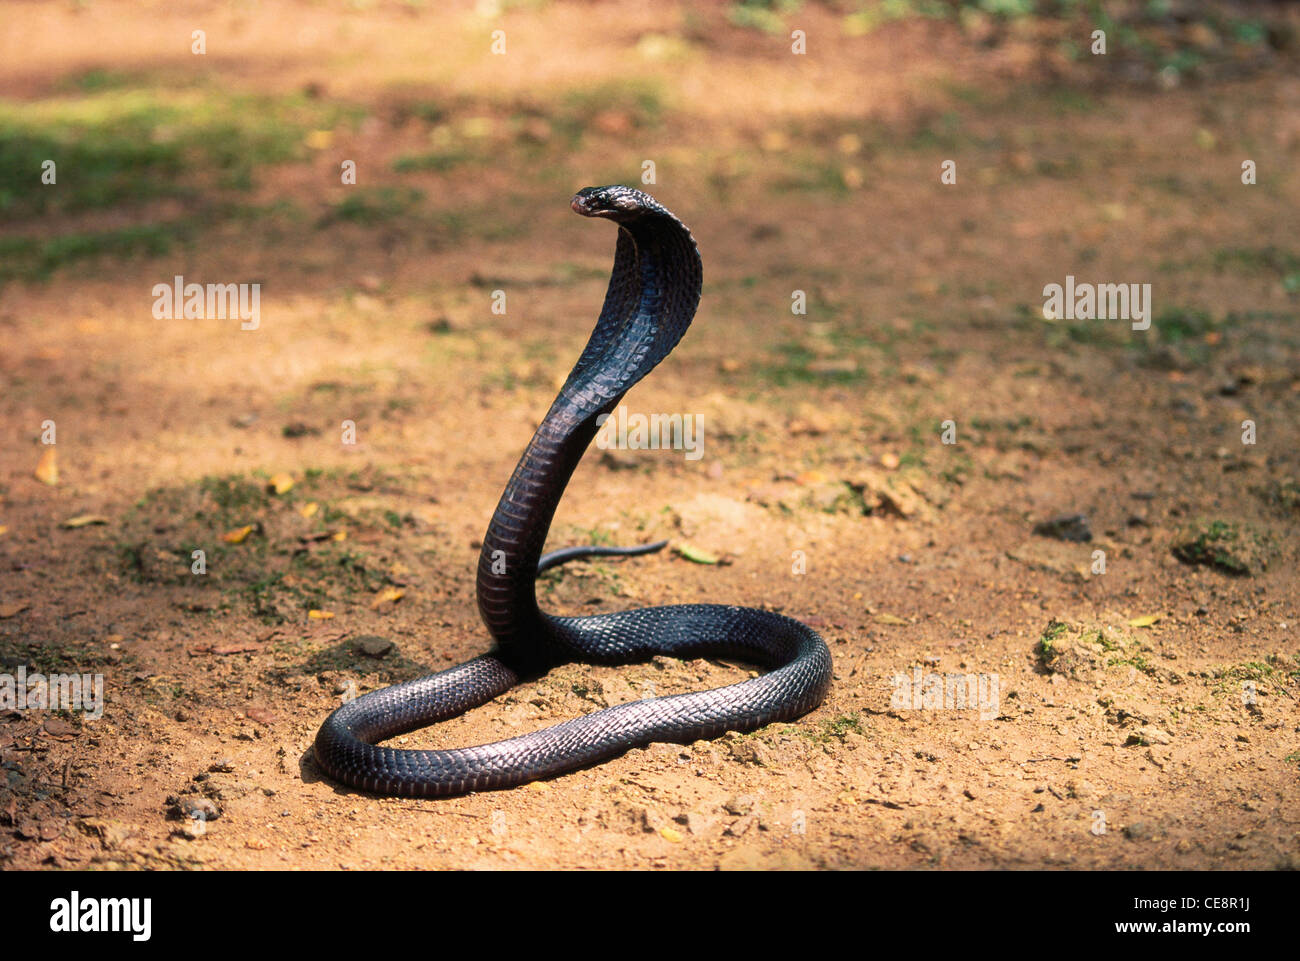 Naja tripudians, Print, Naja is a genus of venomous elapid snakes